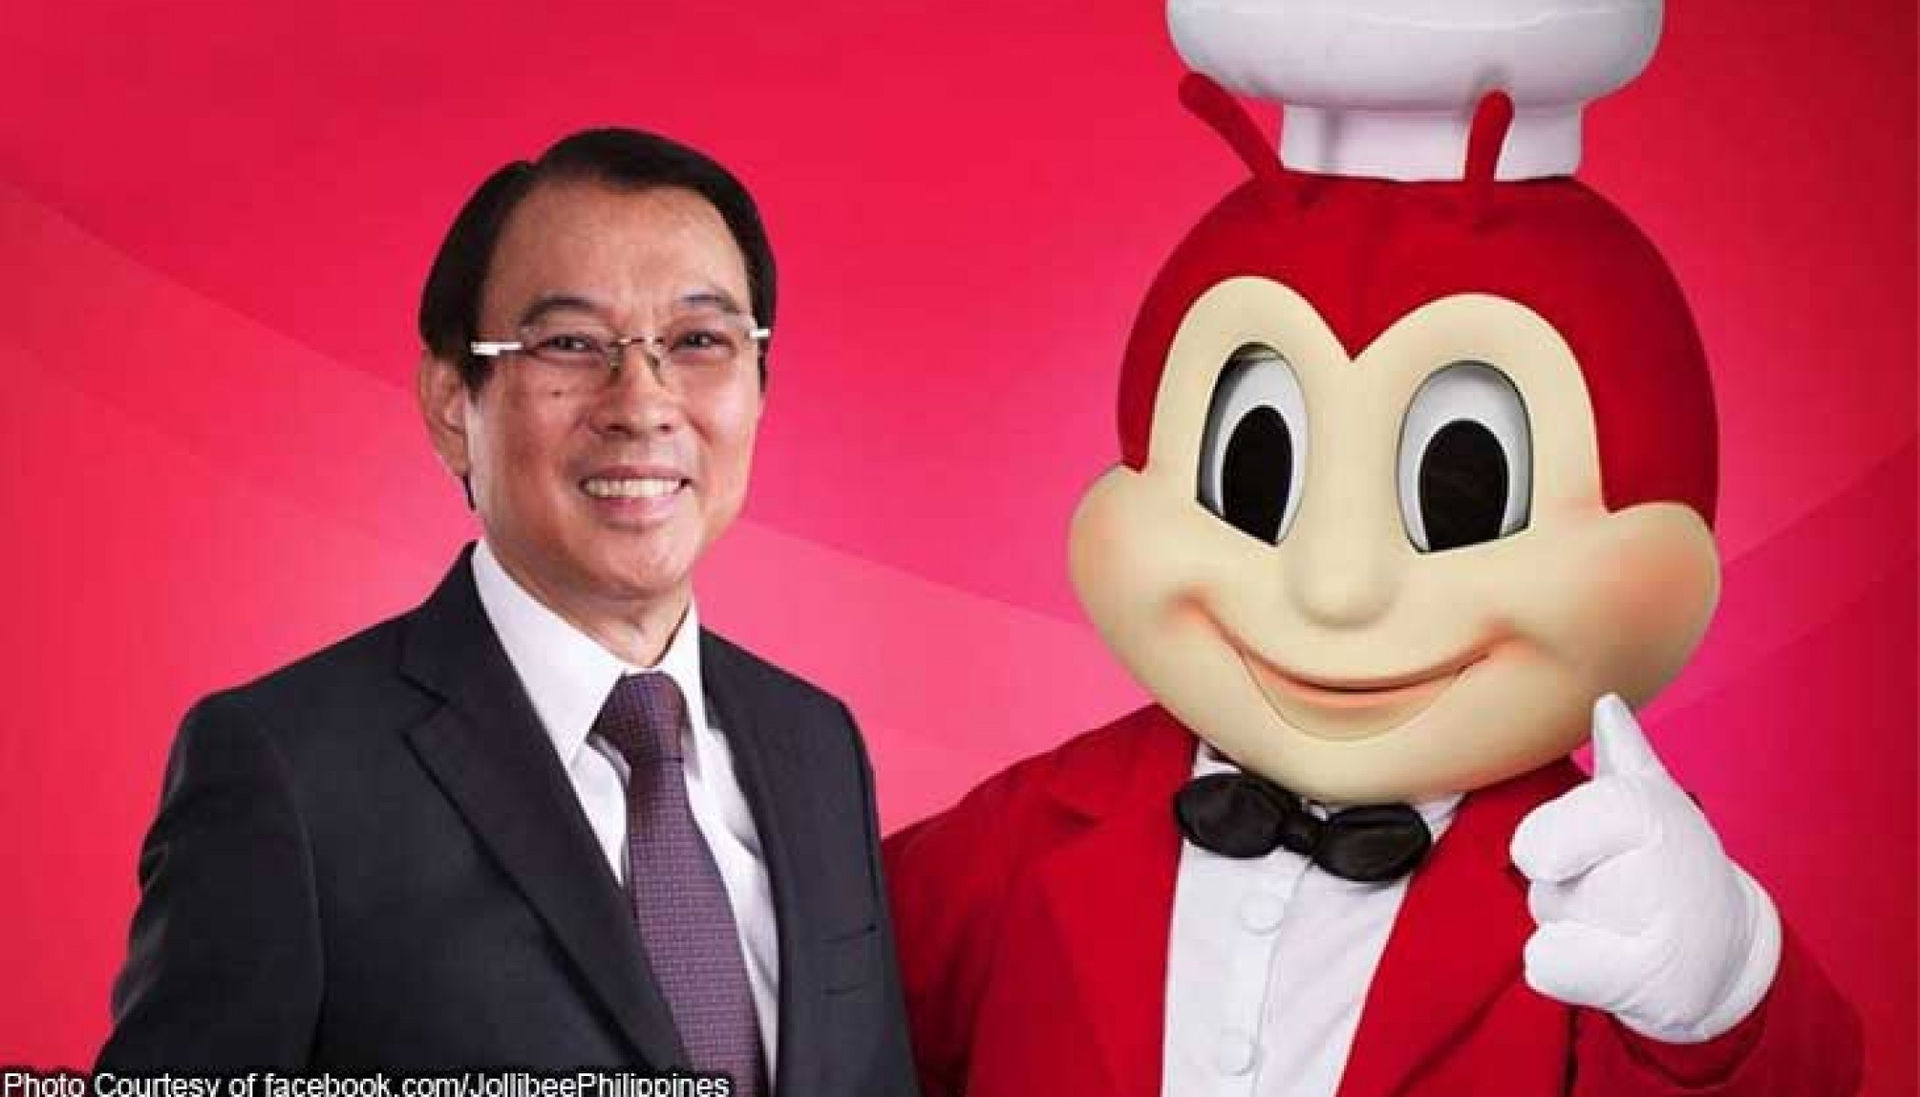   Tỉ phú Tony Tan Caktiong là nhà sáng lập và chủ tịch Jollibee, một trong những chuỗi nhà hàng châu Á phát triển nhanh nhất thế giới.   